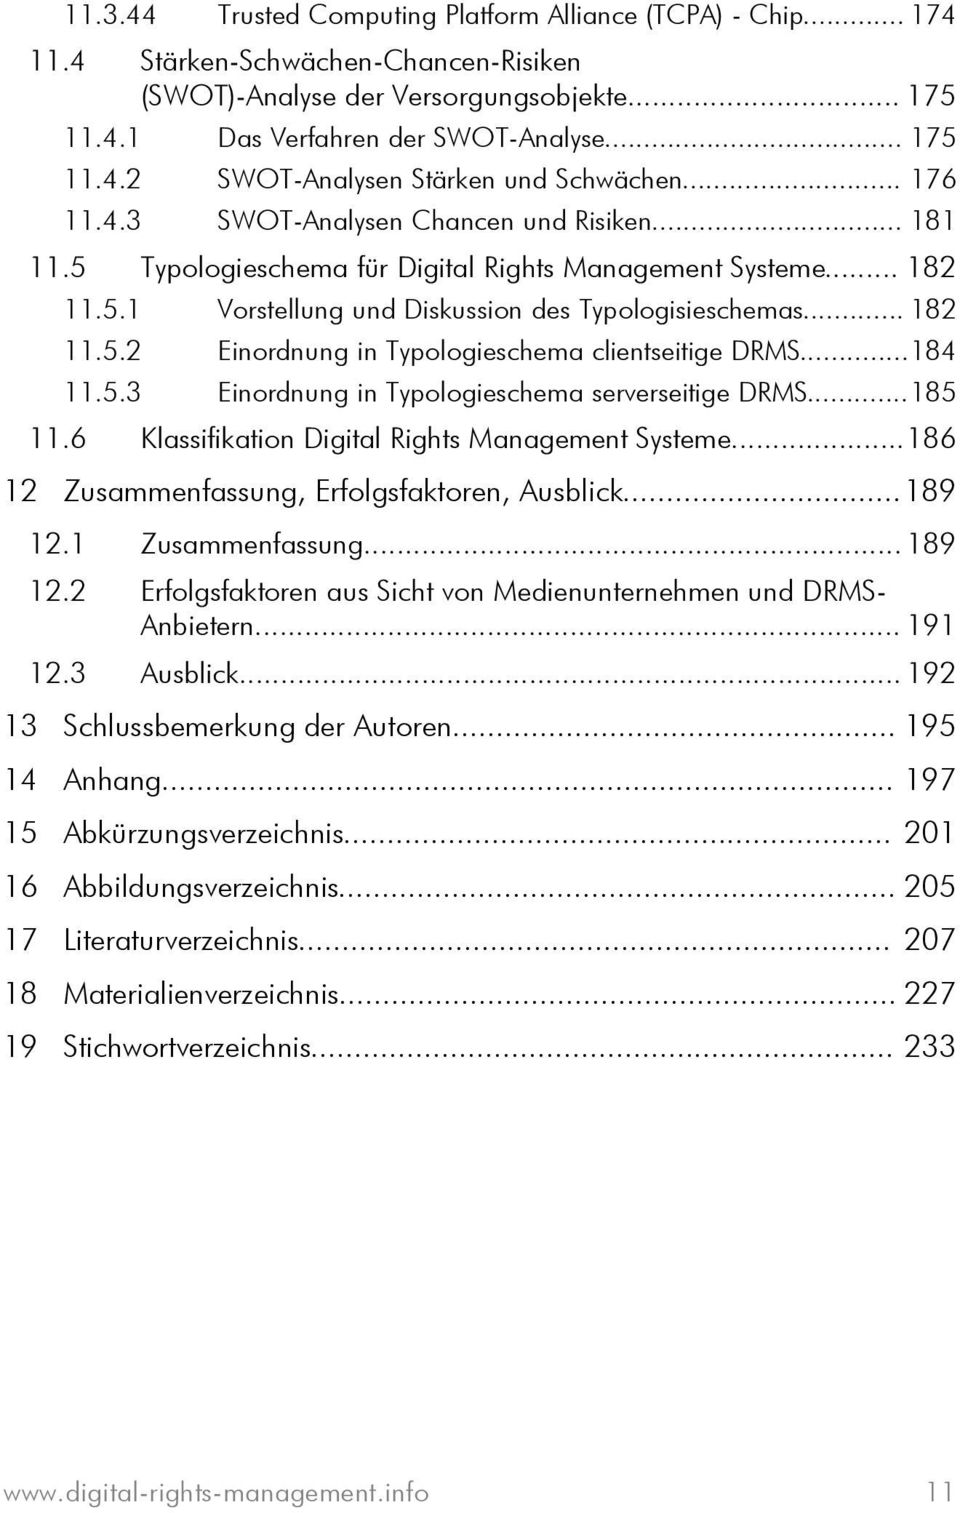 ..184 11.5.3 Einordnung in Typologieschema serverseitige DRMS...185 11.6 Klassifikation Digital Rights Management Systeme...186 12 Zusammenfassung, Erfolgsfaktoren, Ausblick...189 12.